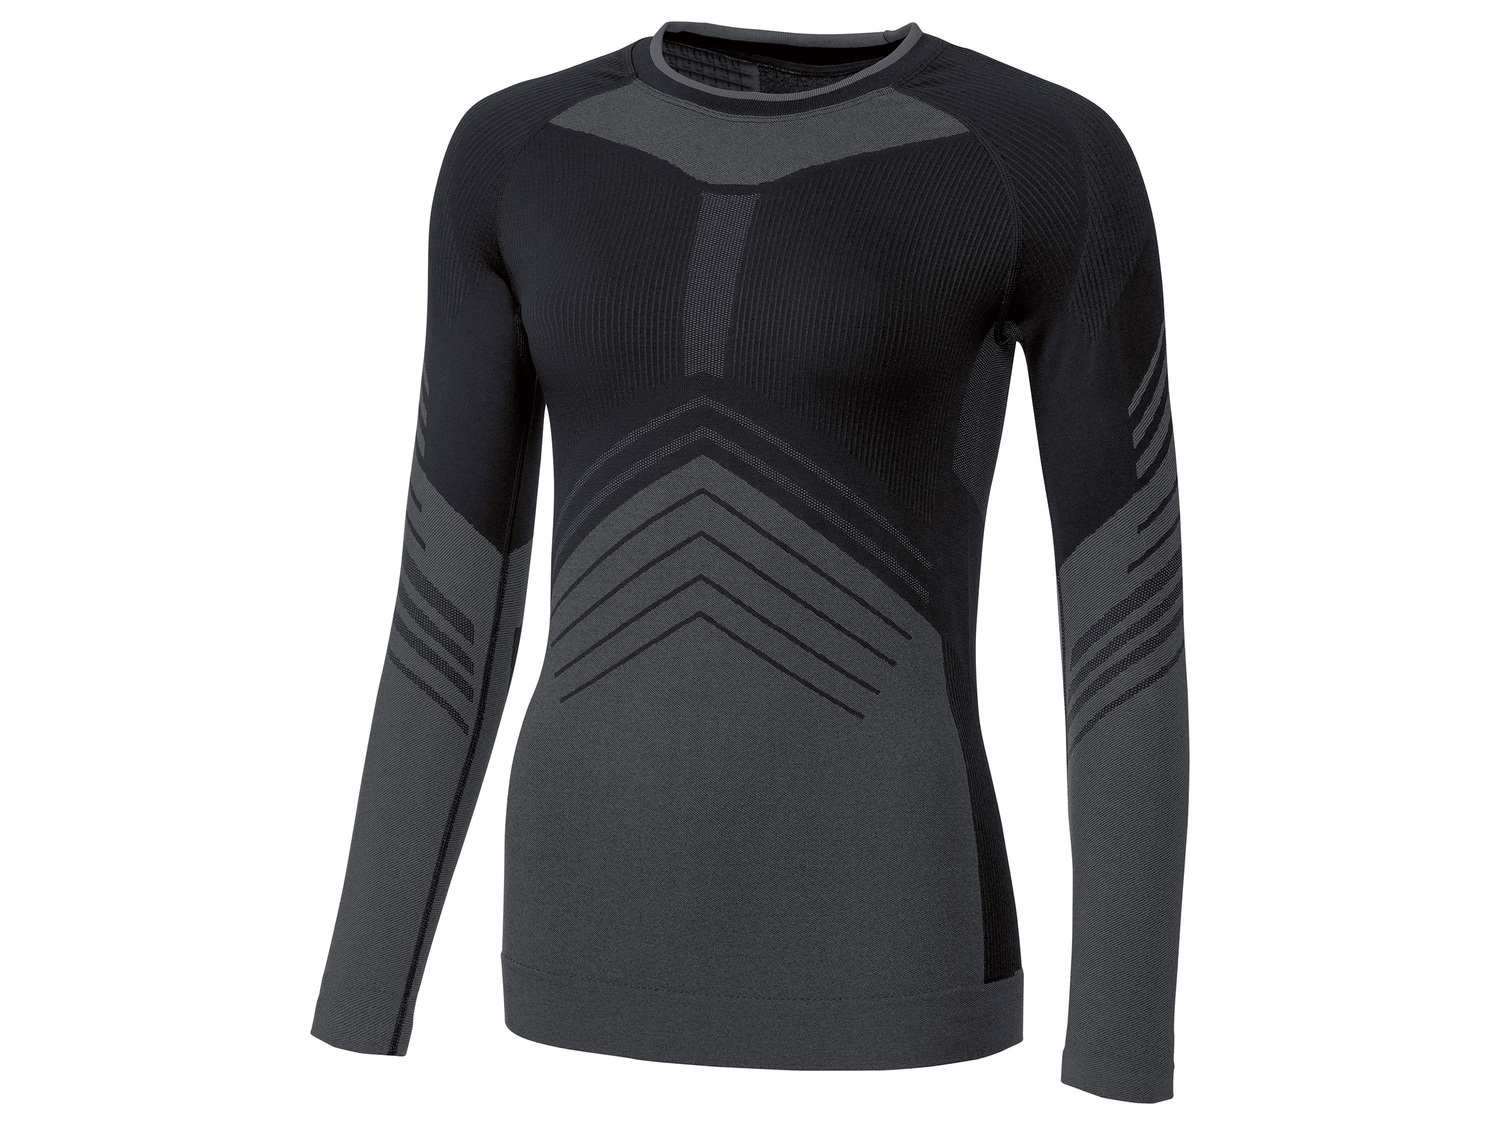 T-shirt de ski technique femme , le prix 14.99 € 
- Du S au XL selon modèle.
- ...